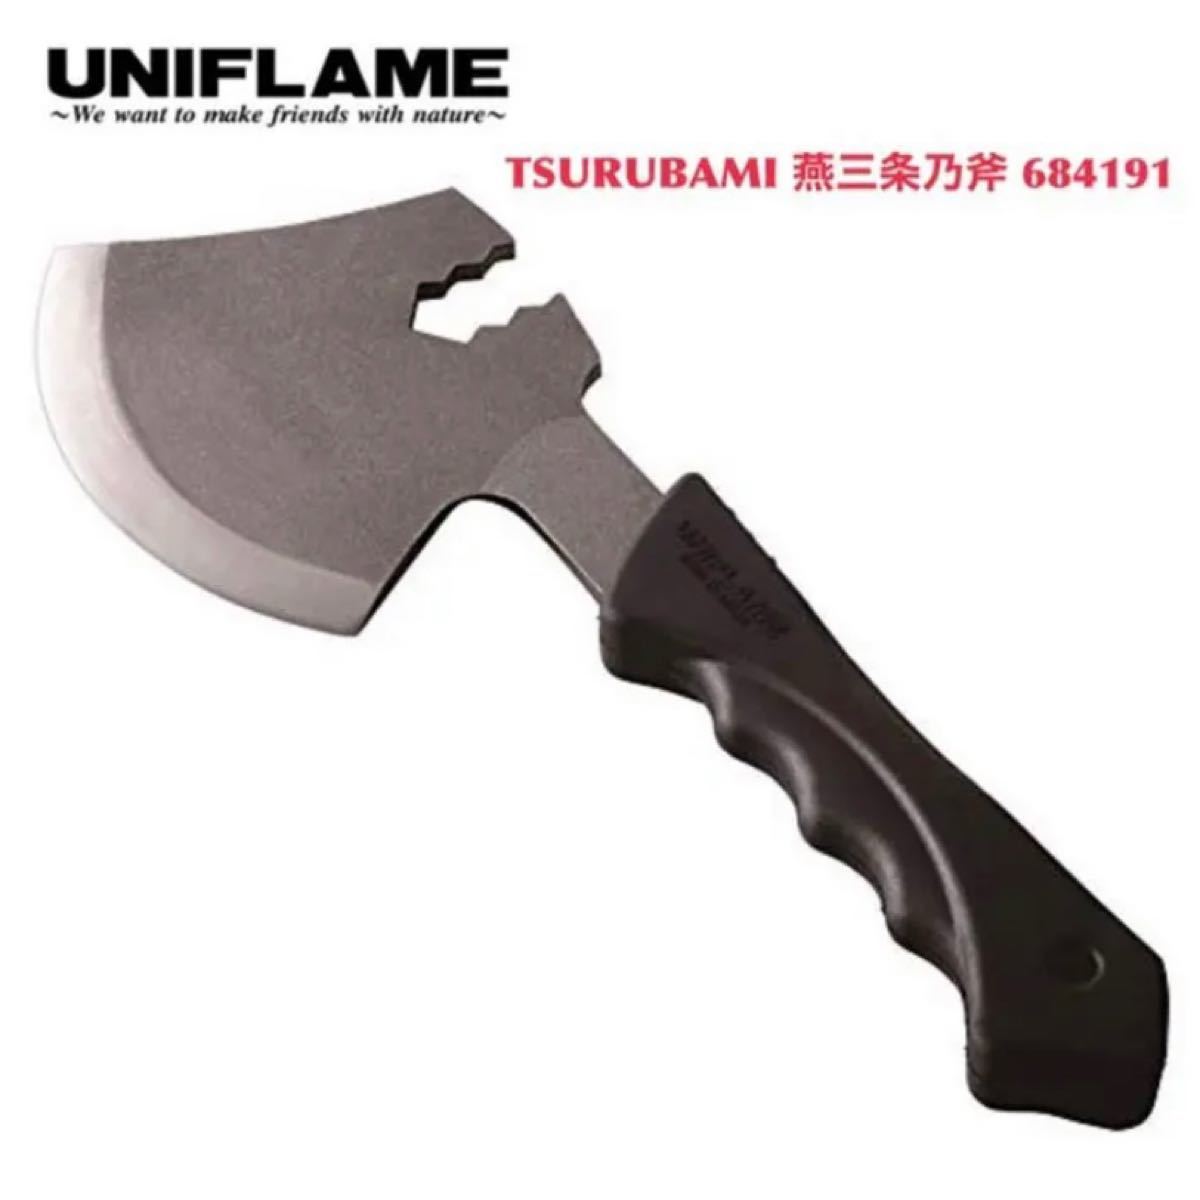 ユニフレーム UNIFLAME TSURUBAMI 燕三条乃斧 684191